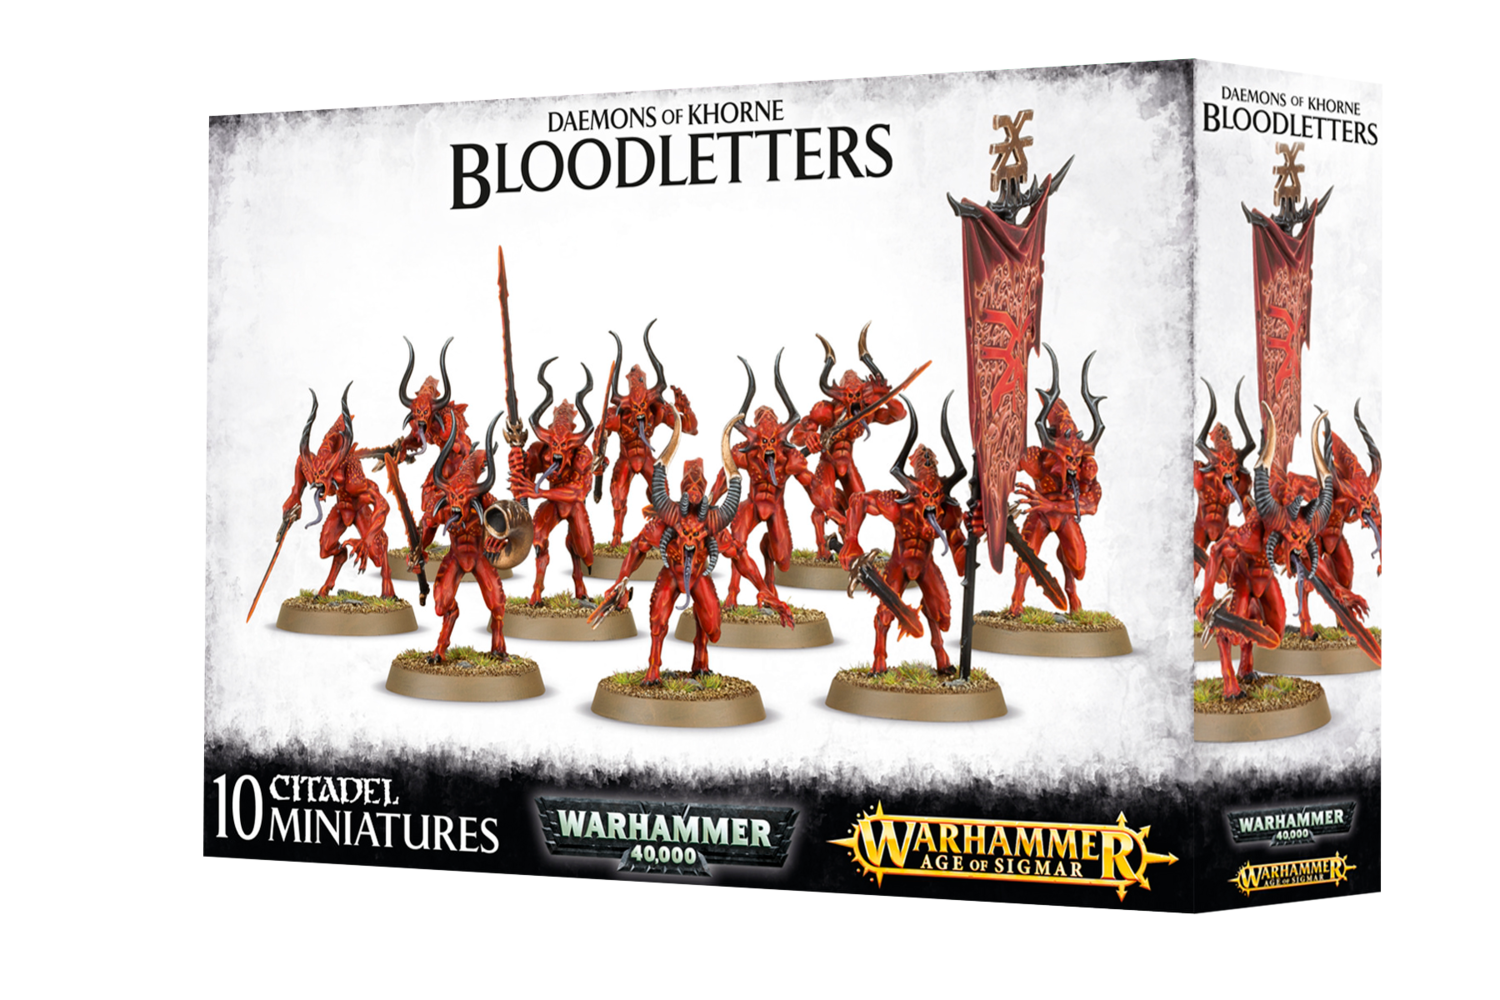 Warhammer Age of Sigmar: Daemons of Khorne Bloodletters